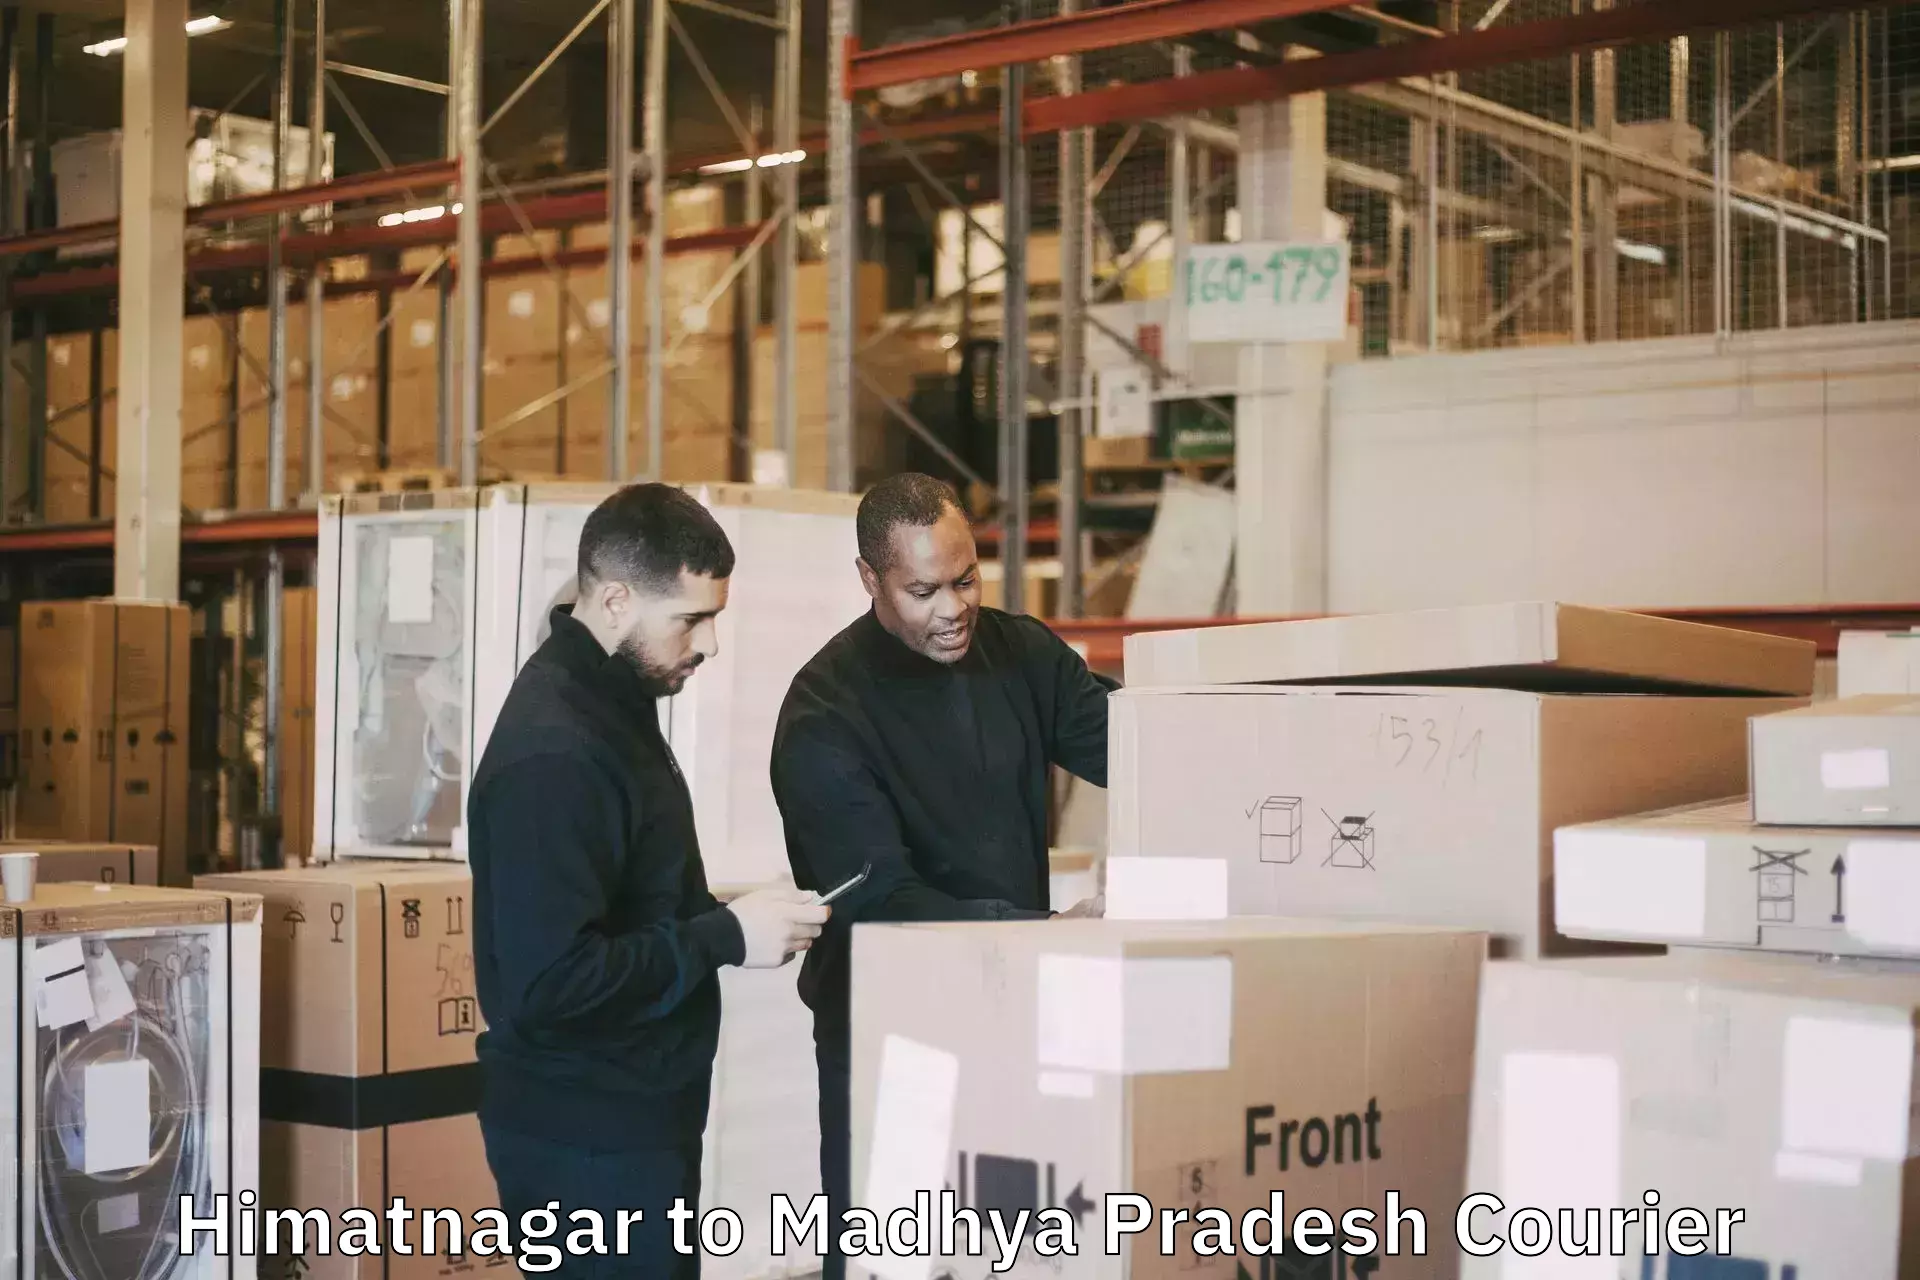 Baggage shipping quotes in Himatnagar to Ganj Basoda